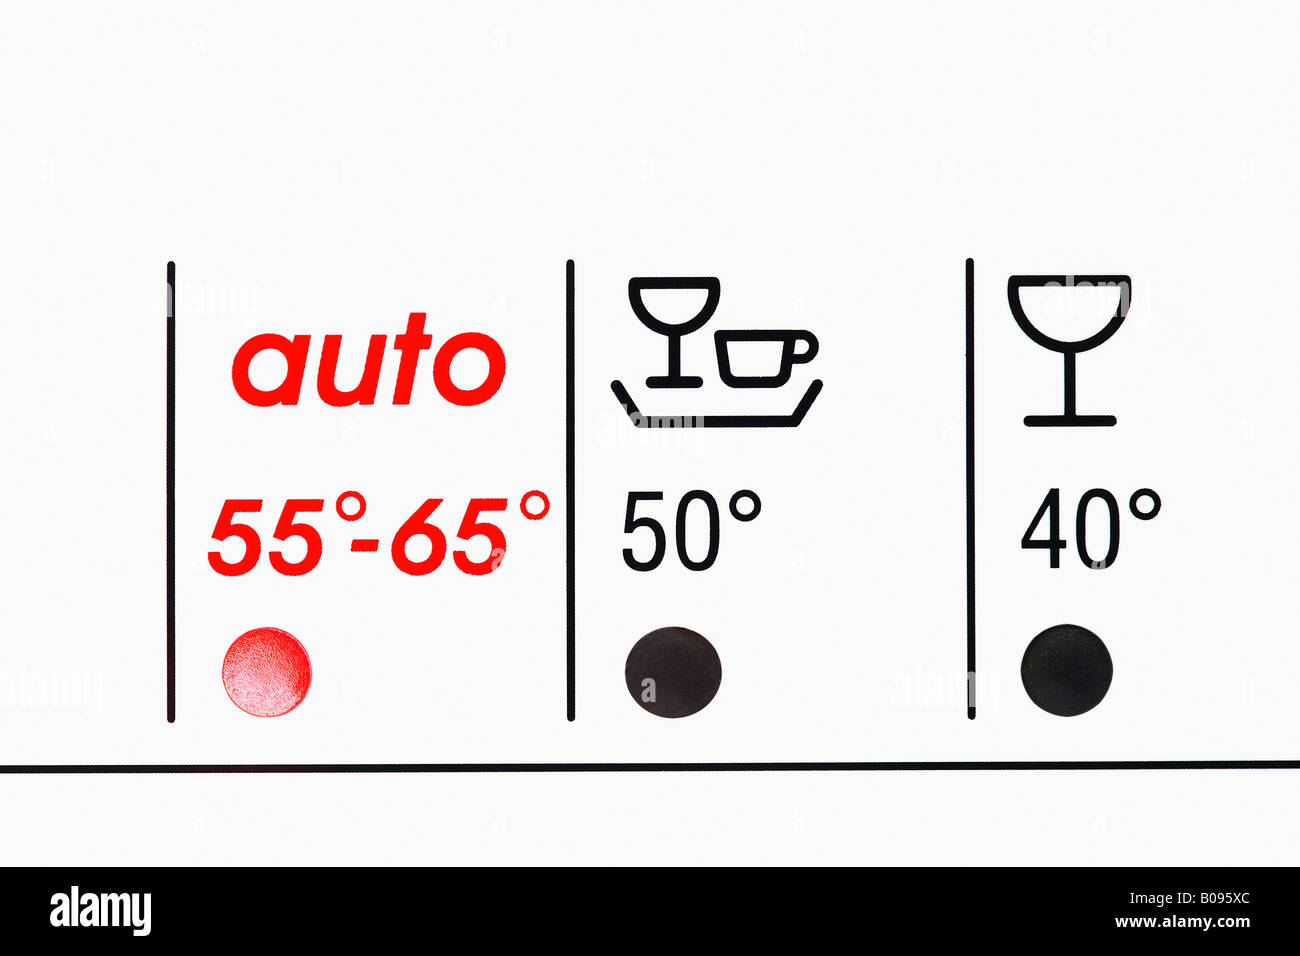 Pictogrammes pour l'affichage de plusieurs cycles de lavage sur un lave- vaisselle Photo Stock - Alamy